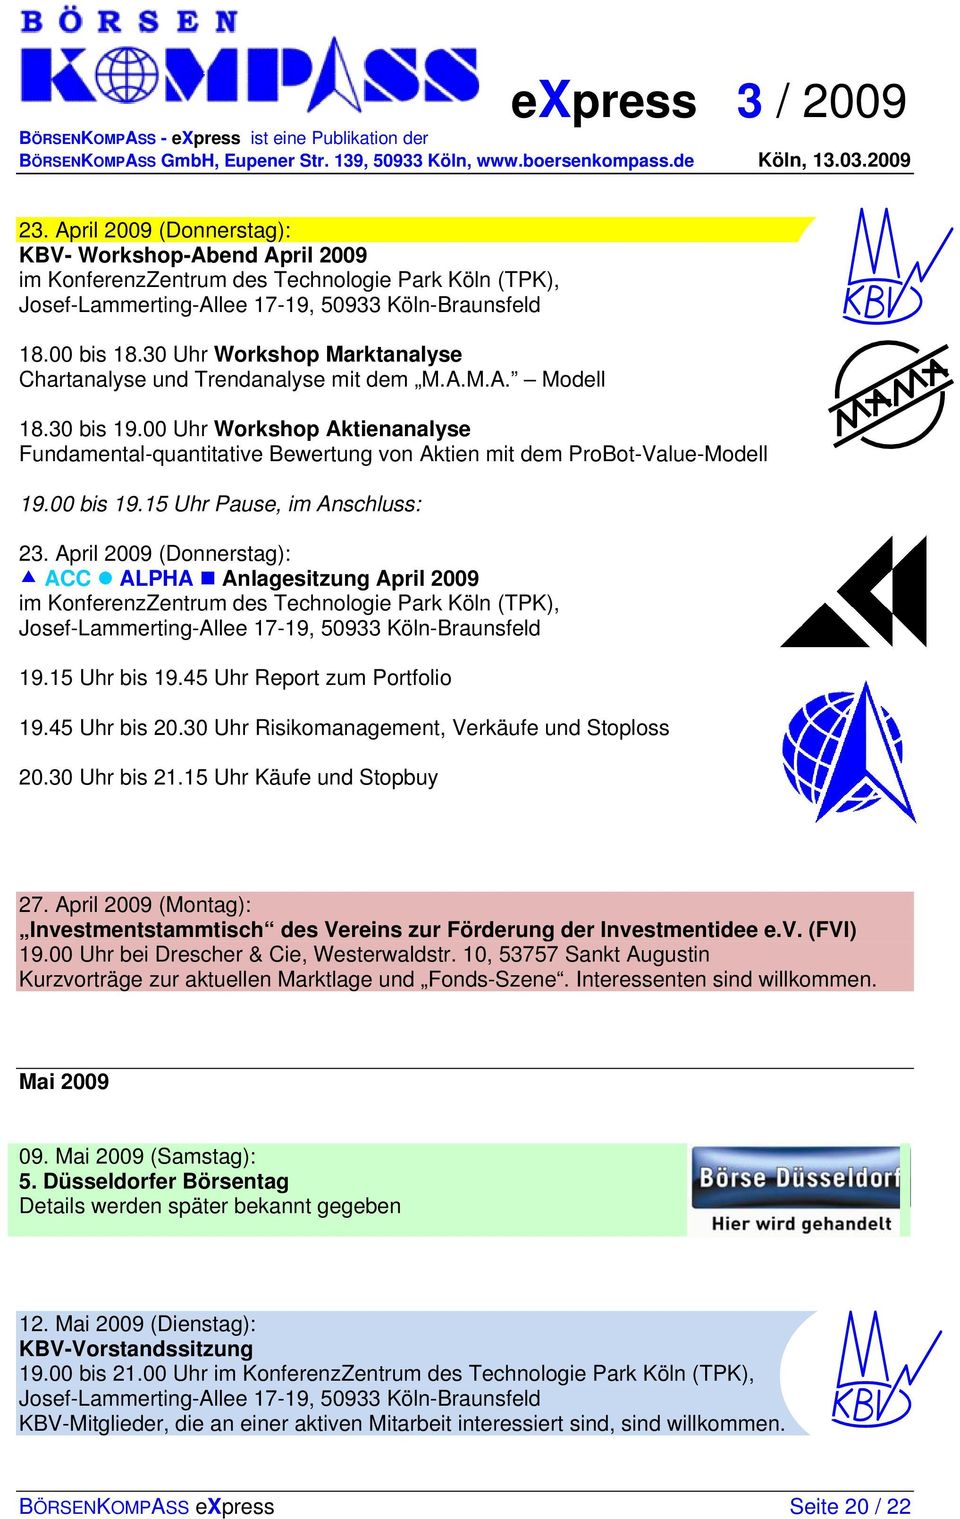 April 2009 (Donnerstag): ACC ALPHA Anlagesitzung April 2009 im KonferenzZentrum des Technologie Park Köln (TPK), 19.15 Uhr bis 19.45 Uhr Report zum Portfolio 19.45 Uhr bis 20.